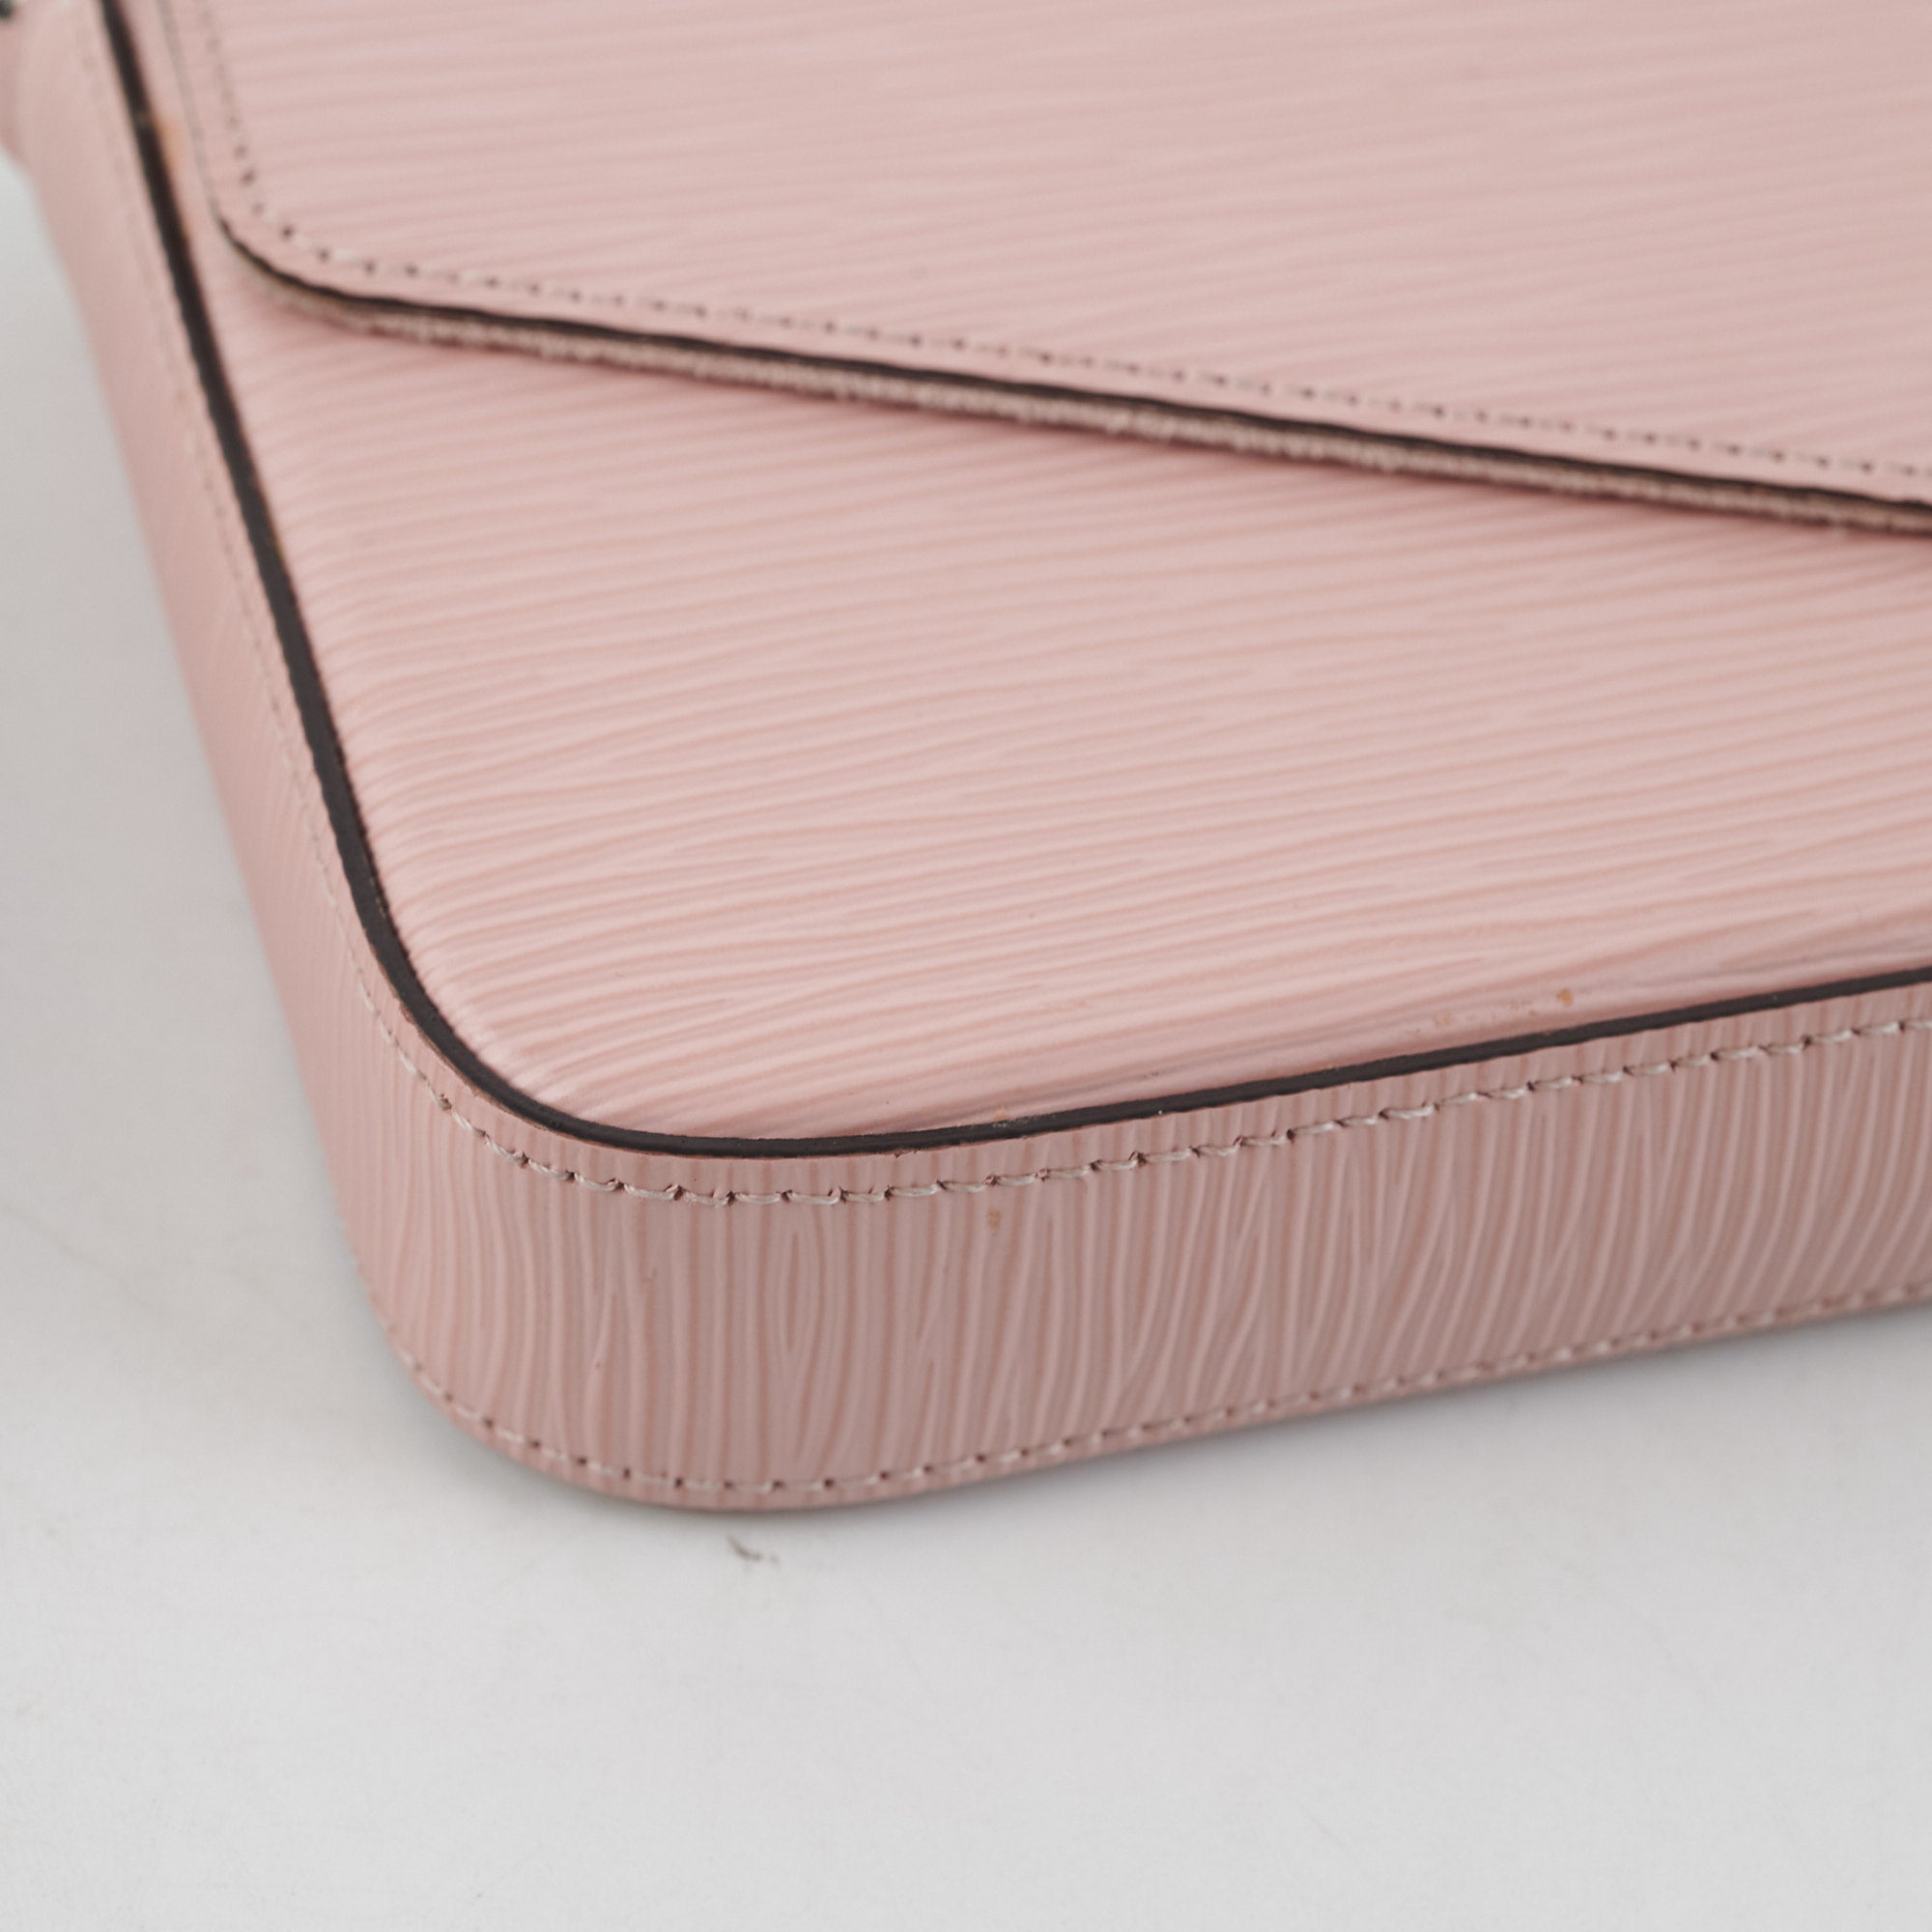 Louis Vuitton Felicie Pochette Pink Epi - THE PURSE AFFAIR